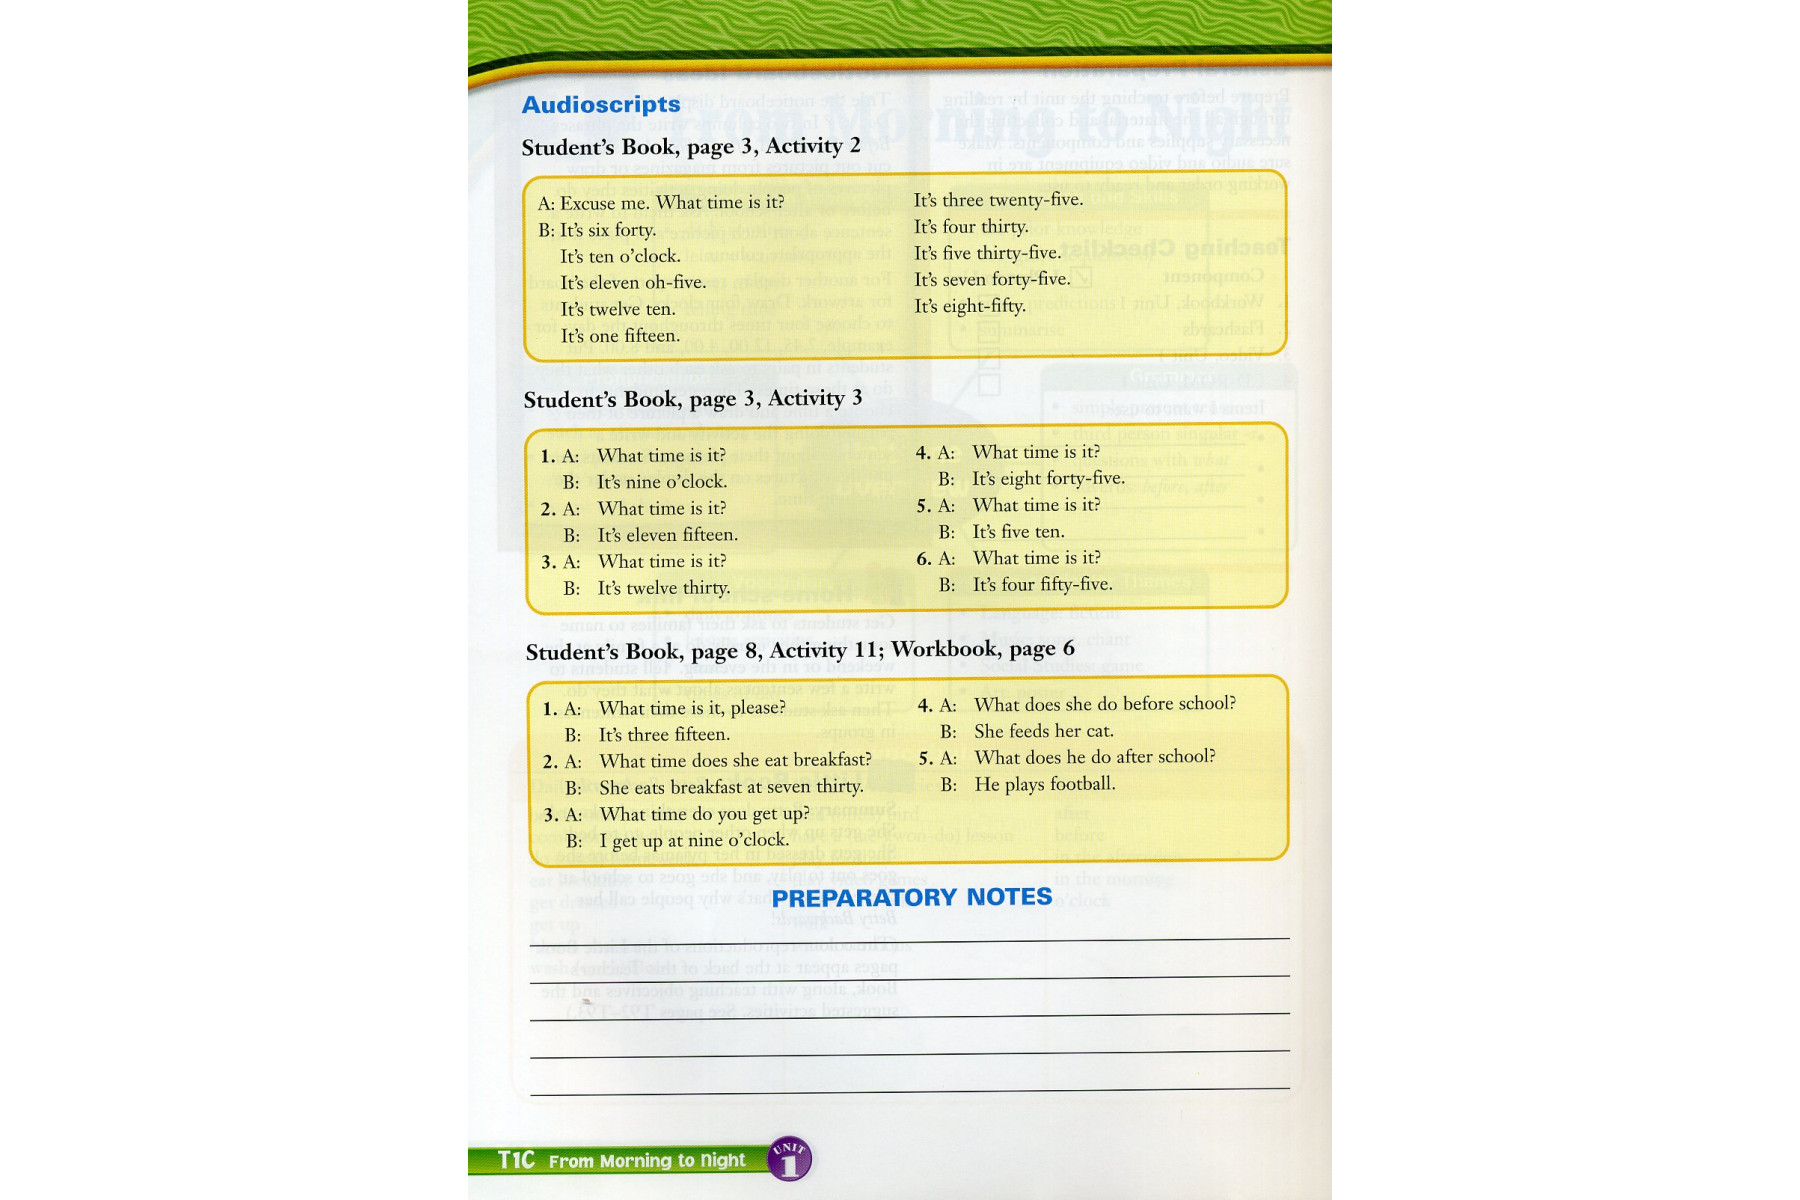 Backpack Level 3: Teacher's Book